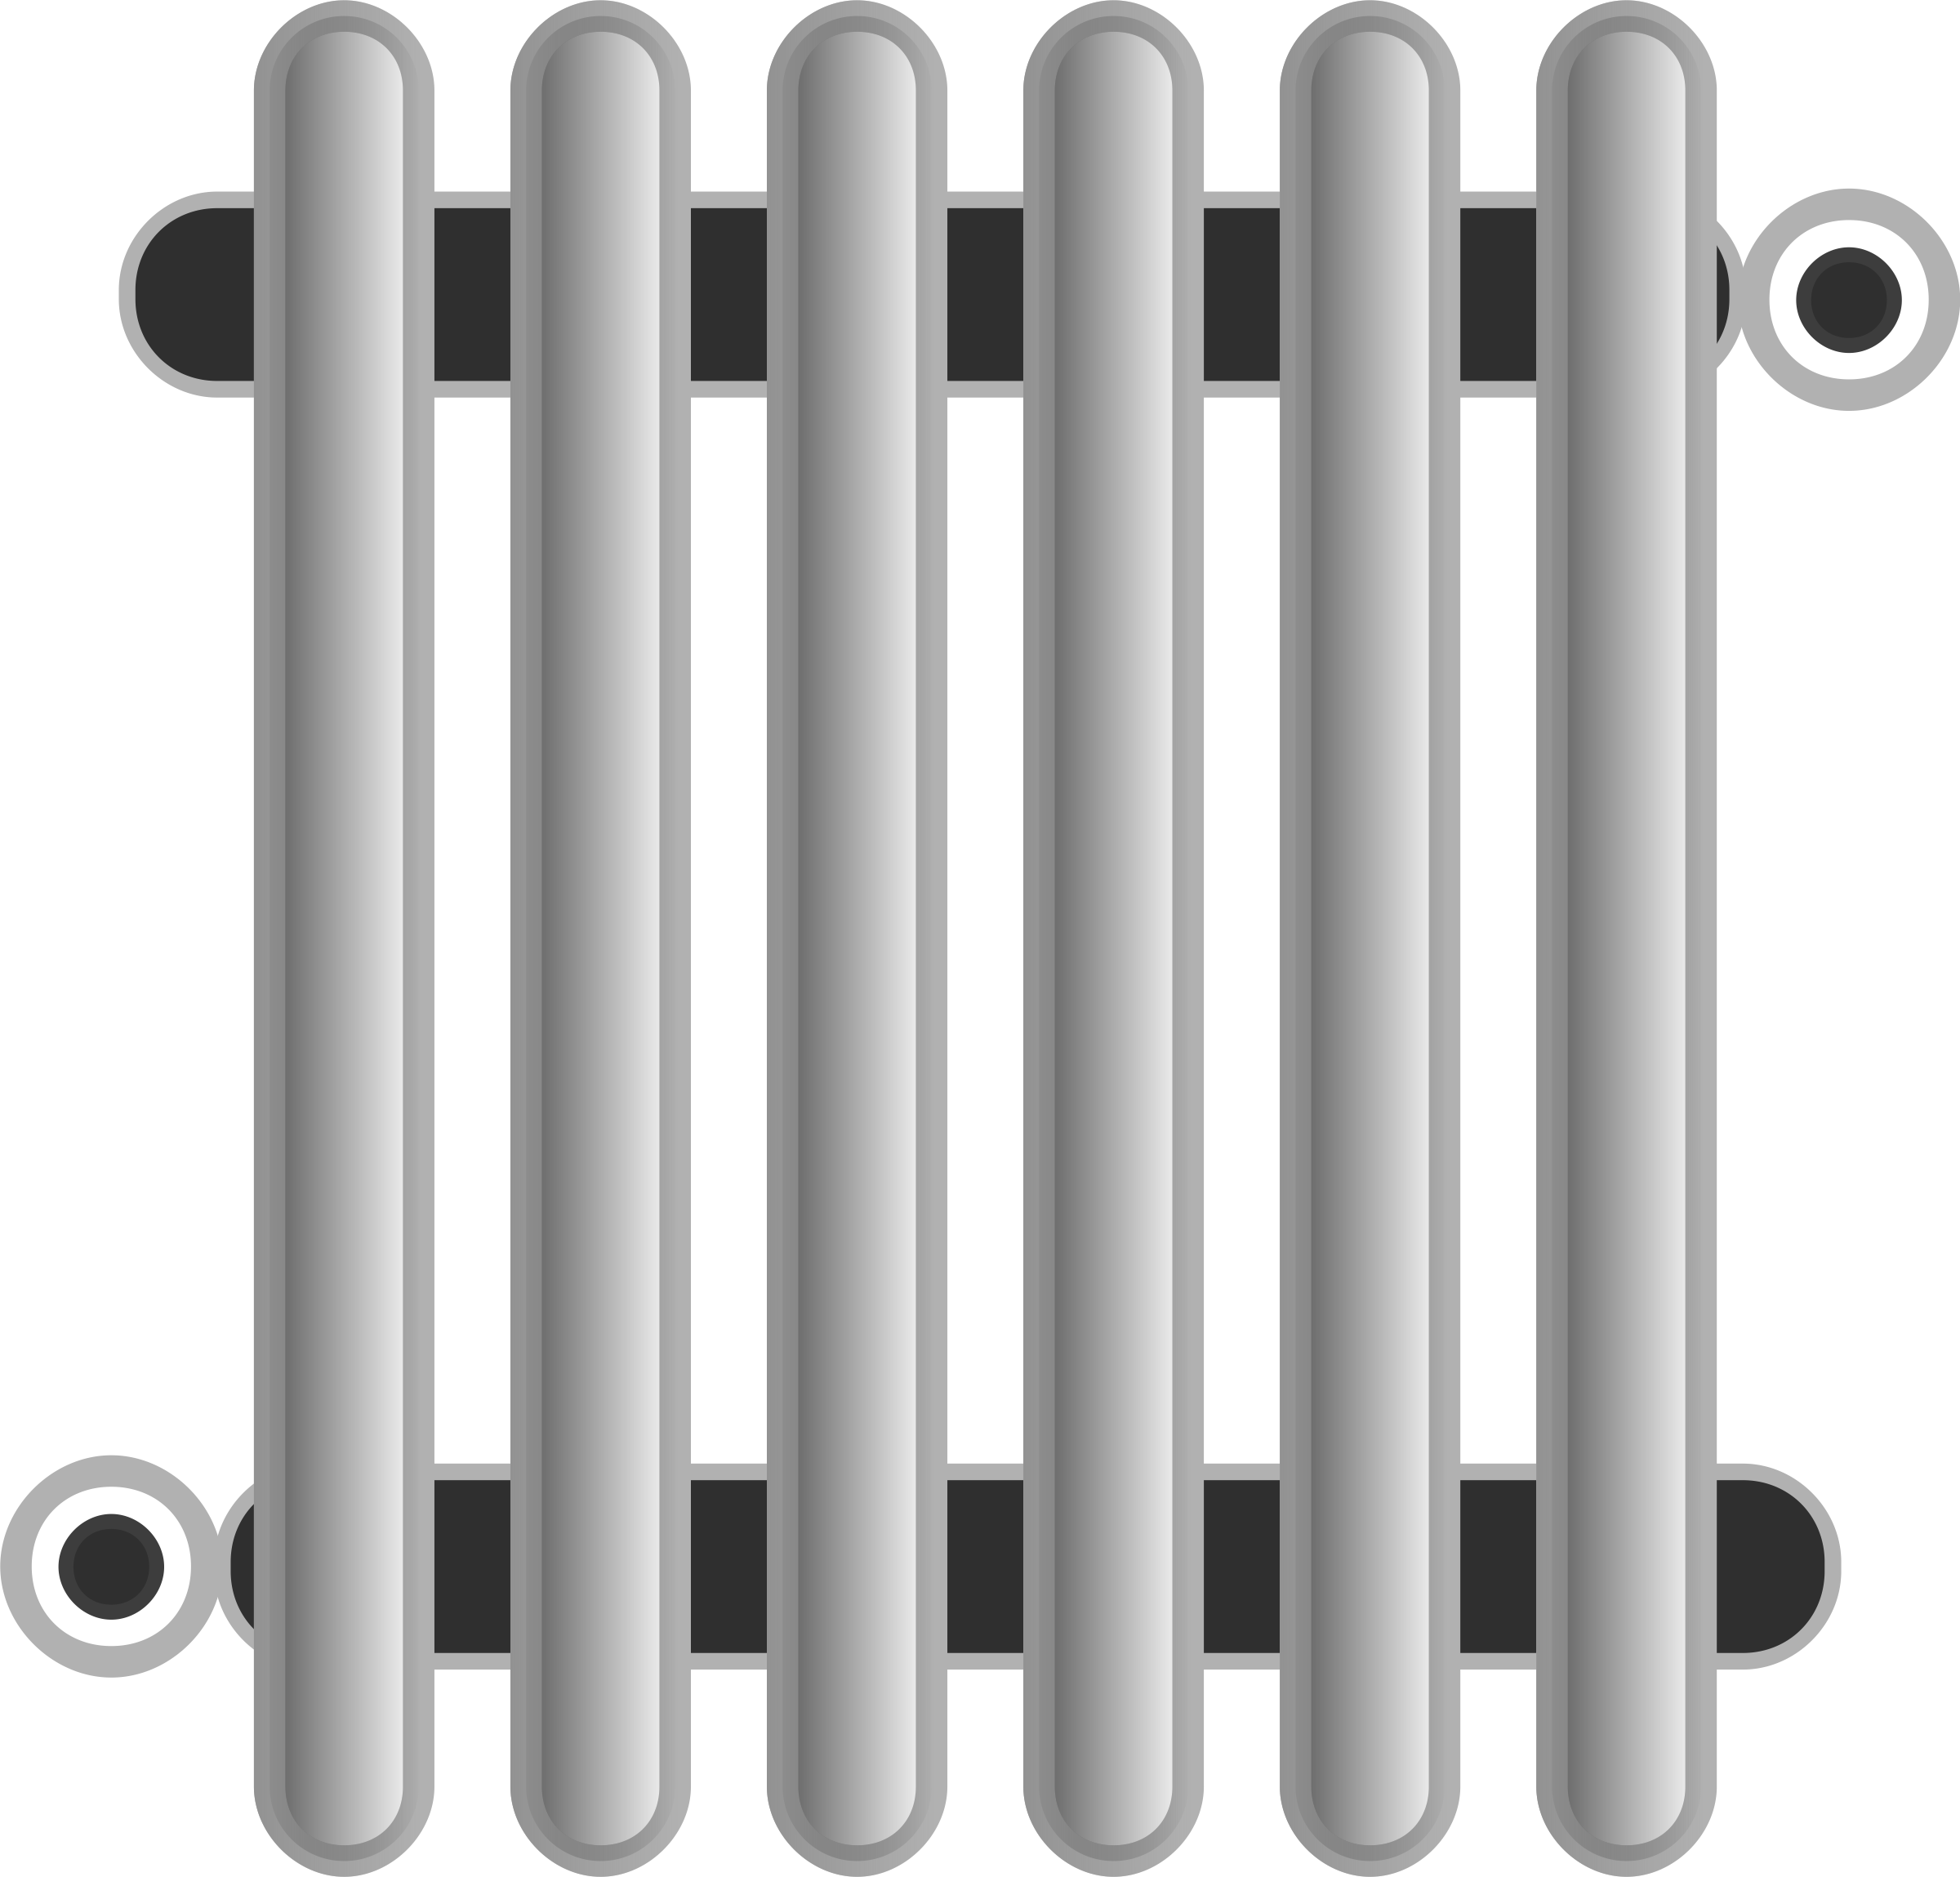 Immagine del PNG del radiatore moderno